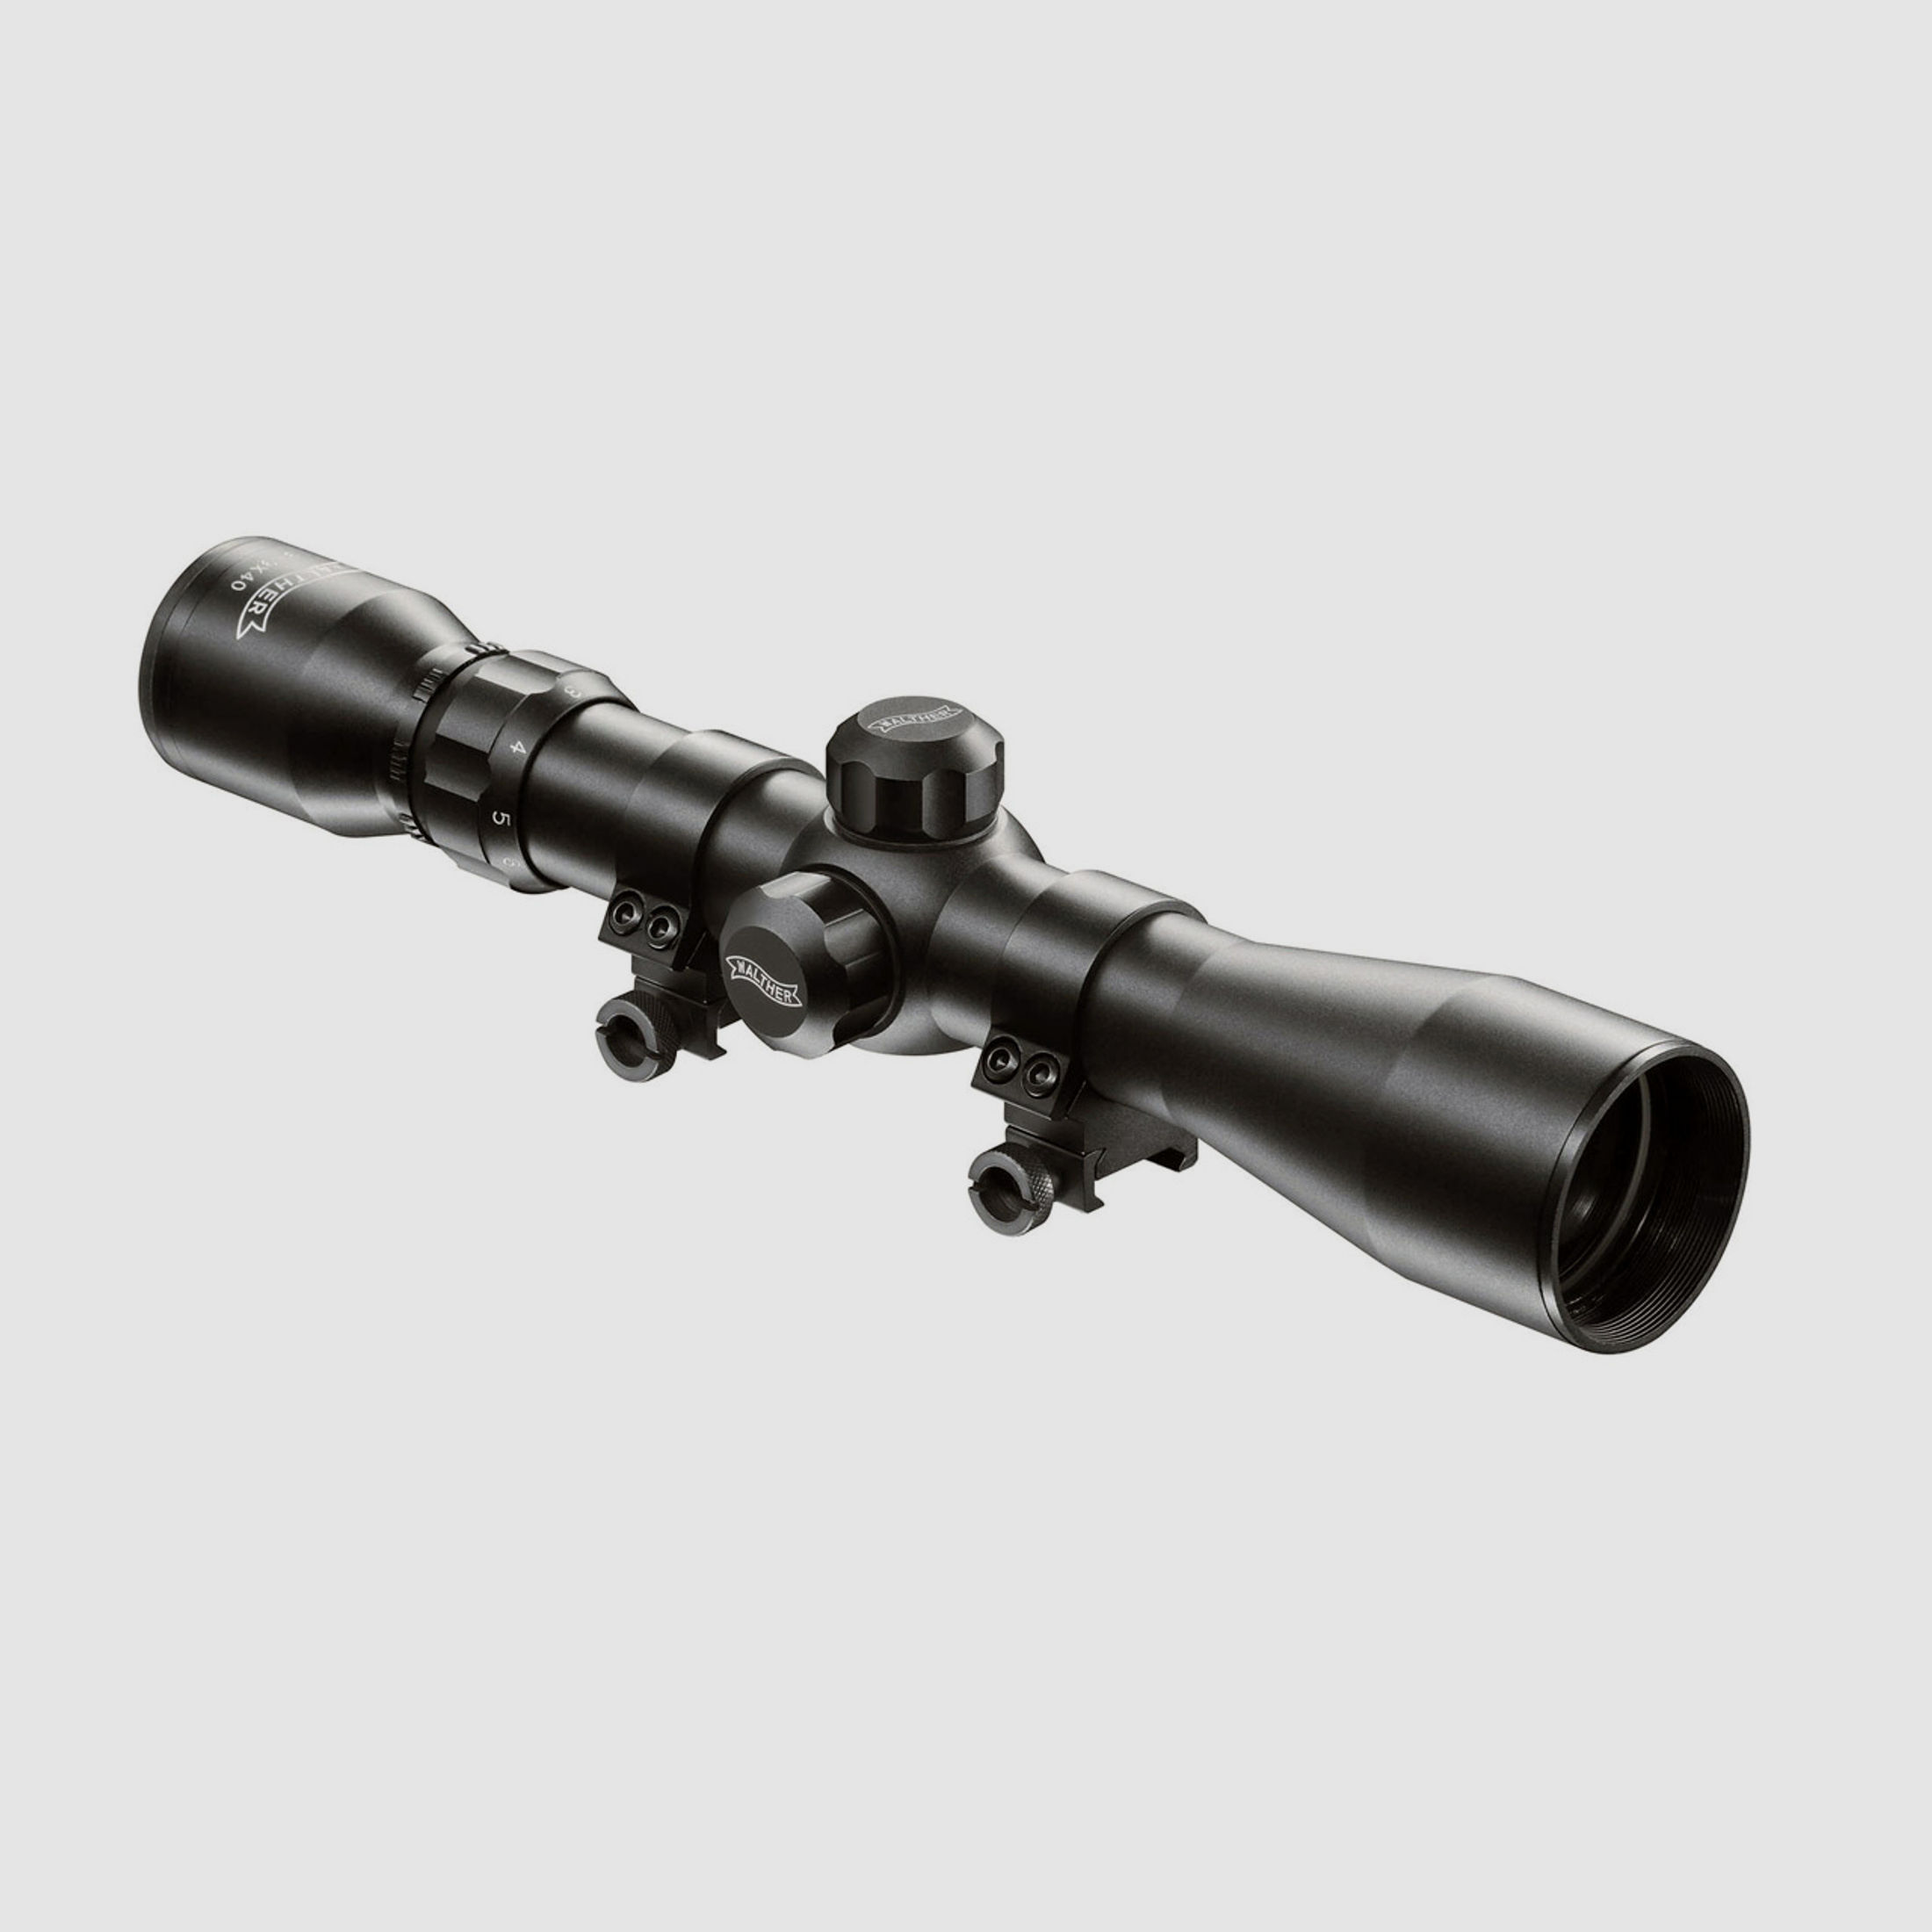 Zielfernrohr Walther 3-9x40, Absehen 8, unbeleuchtet, 30 mm Tubus, Weaver-, Picatinny-Montage